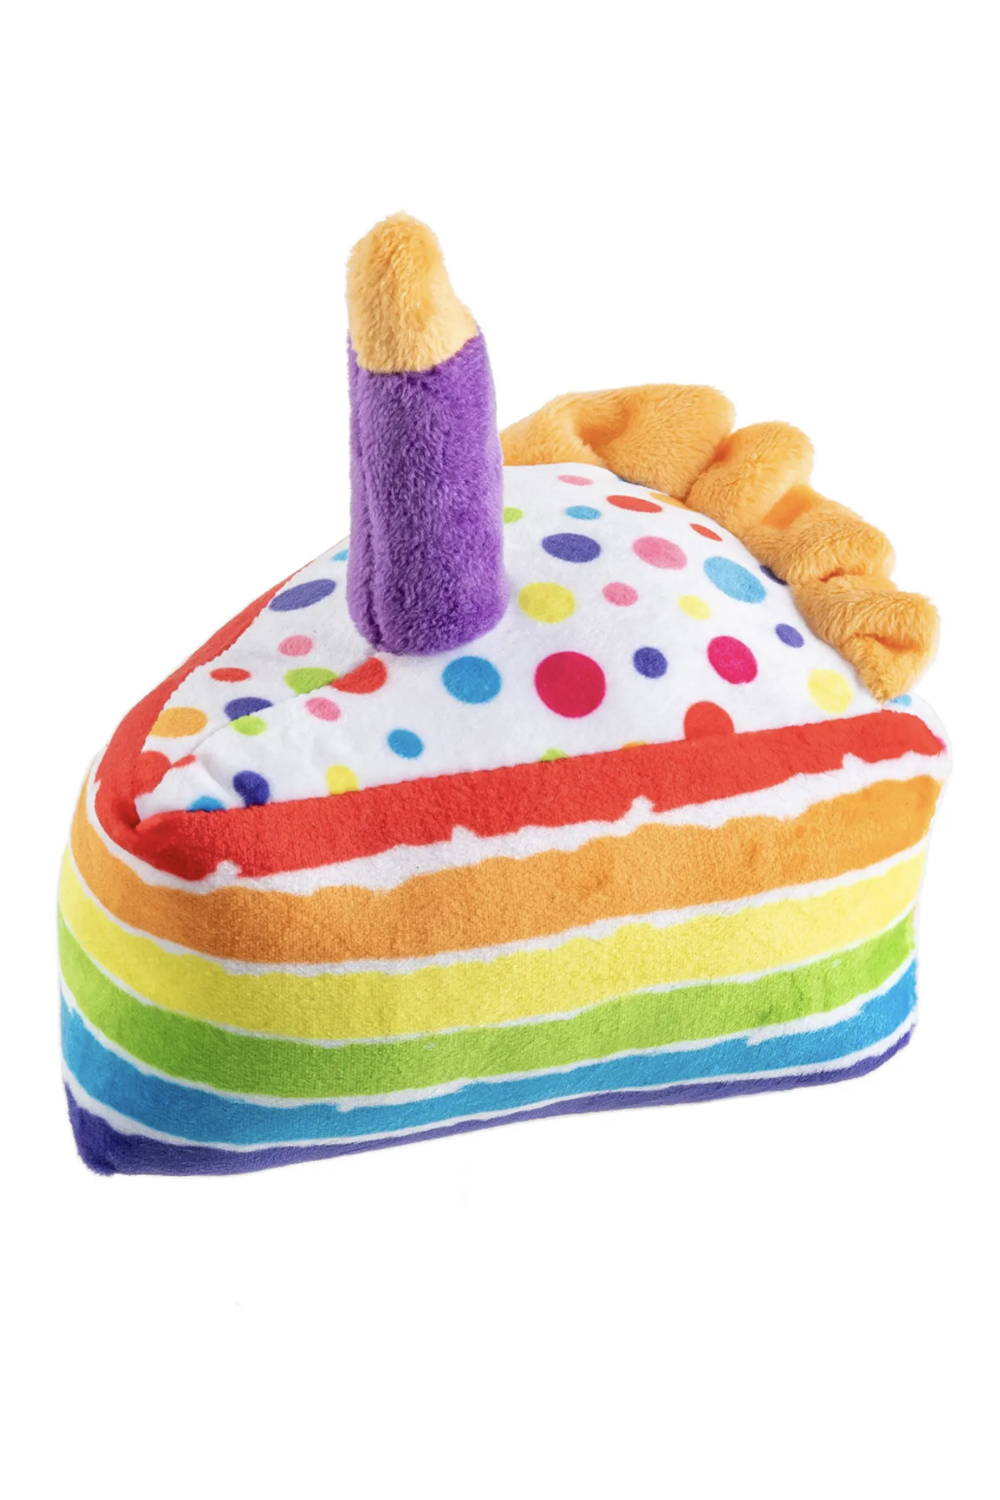 Funny Dog Toy - Birthday Cake Slice